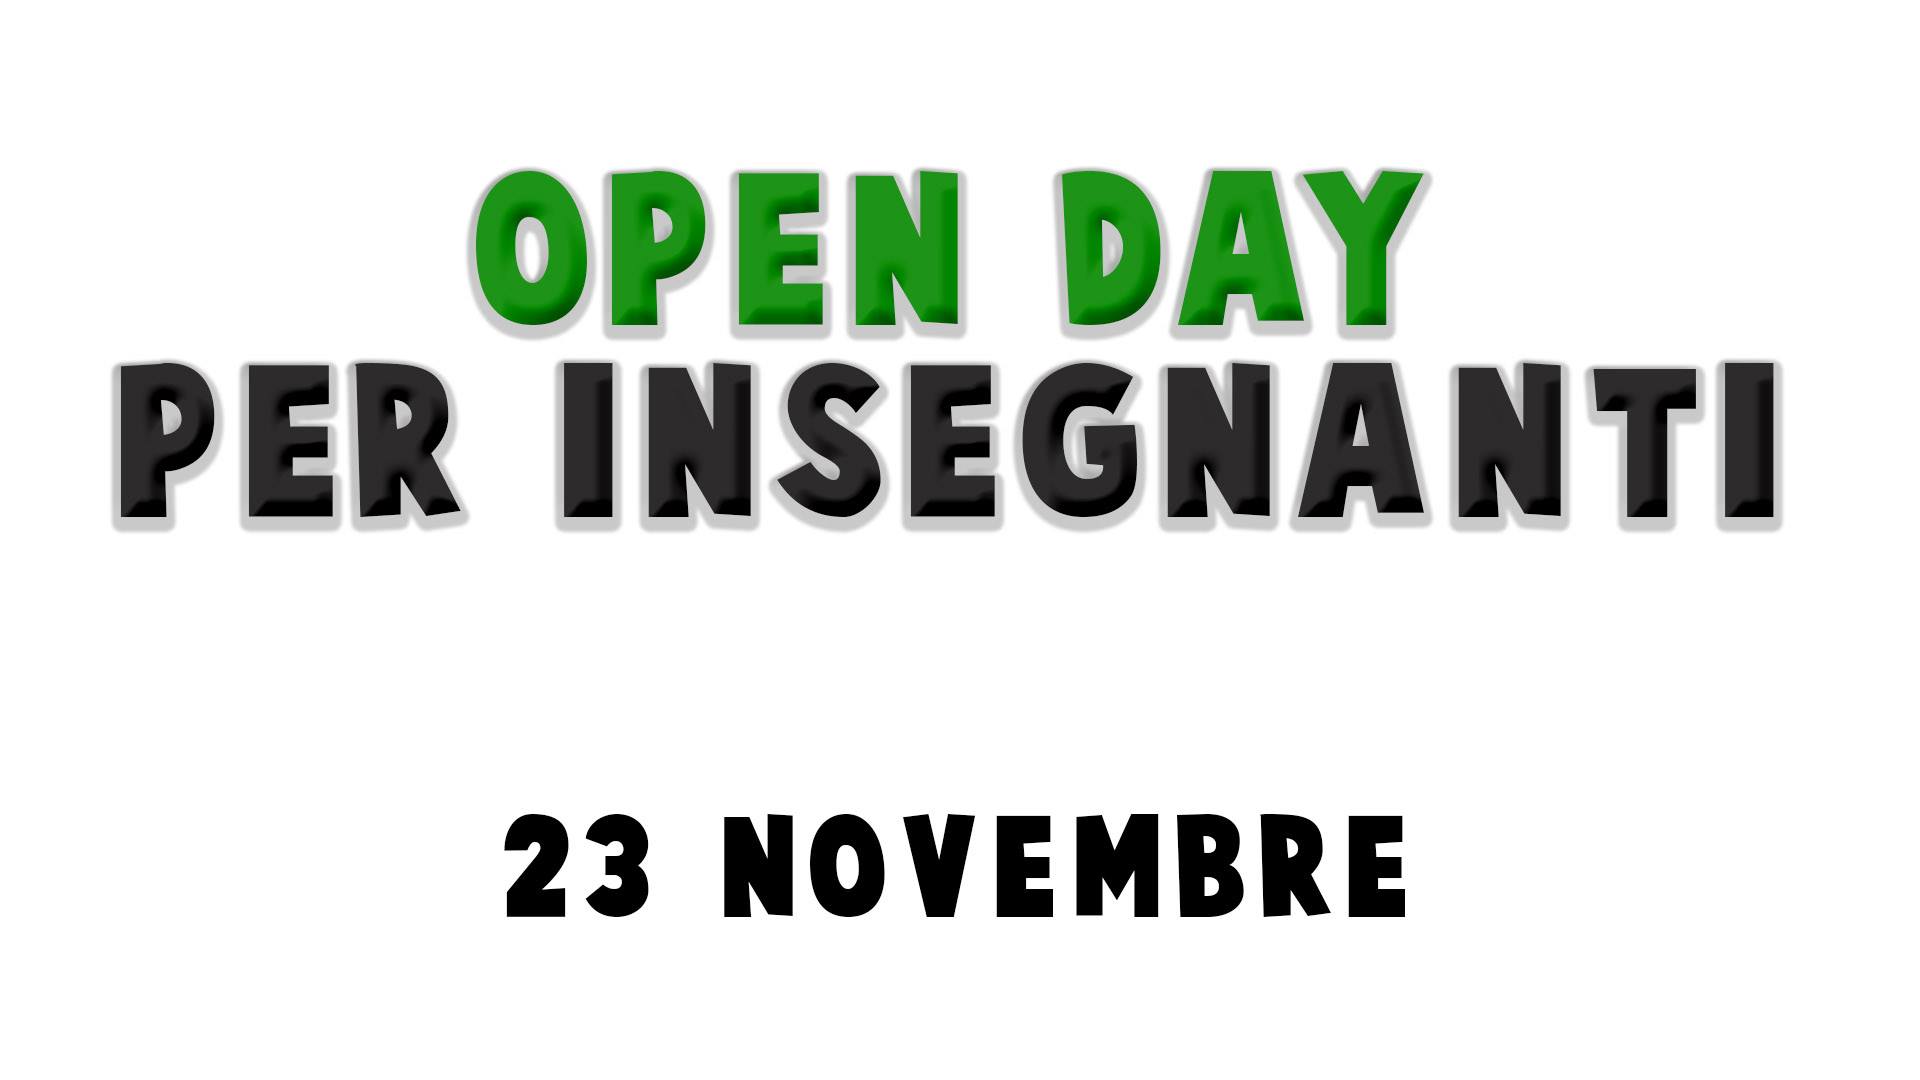 Open Day per Insegnanti - 23 Novembre 2019